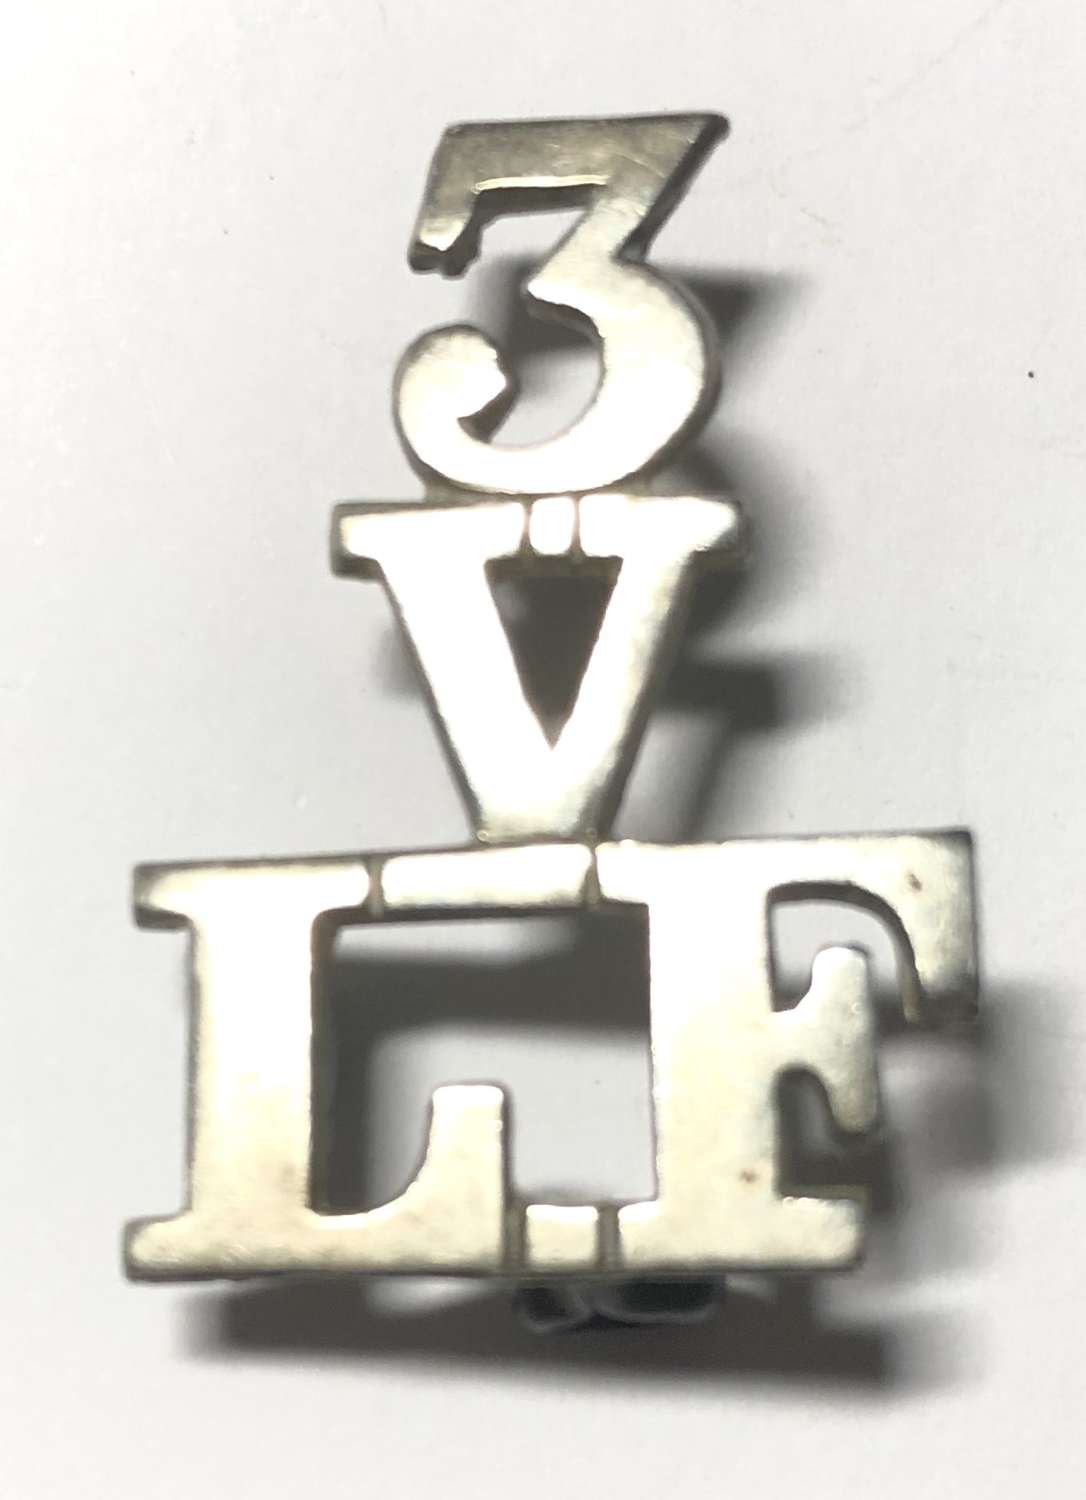 3 / V / LF 3rd VB Lancashire Fusiliers pre 1908 shoulder title